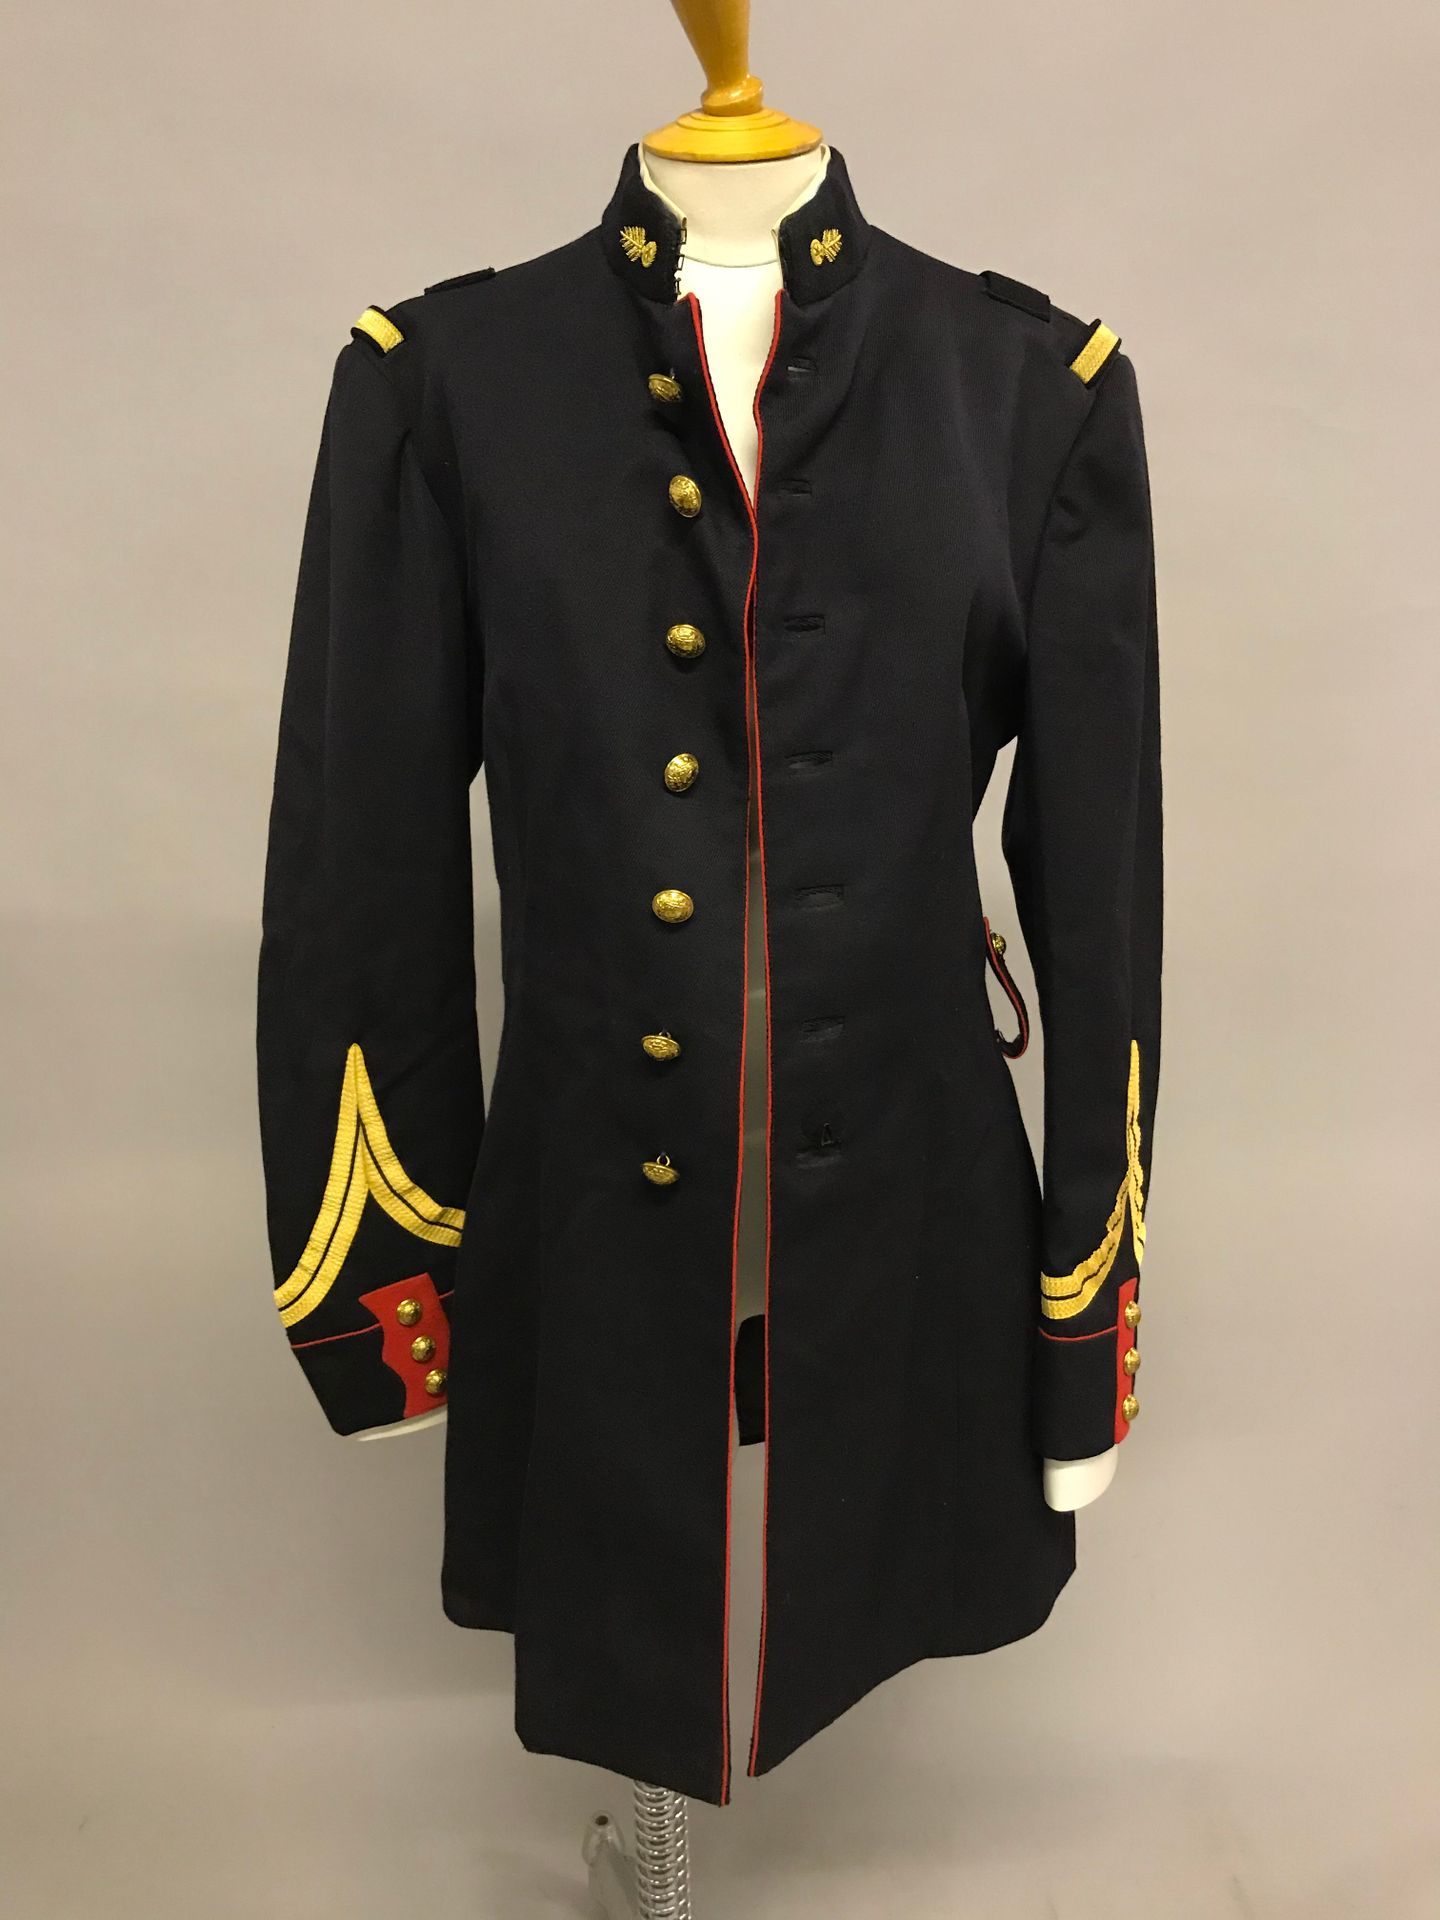 [MILITARIA - GENDARMERIE] [军事装备 - 宪兵]

上衣（黄色和红色袖子）。